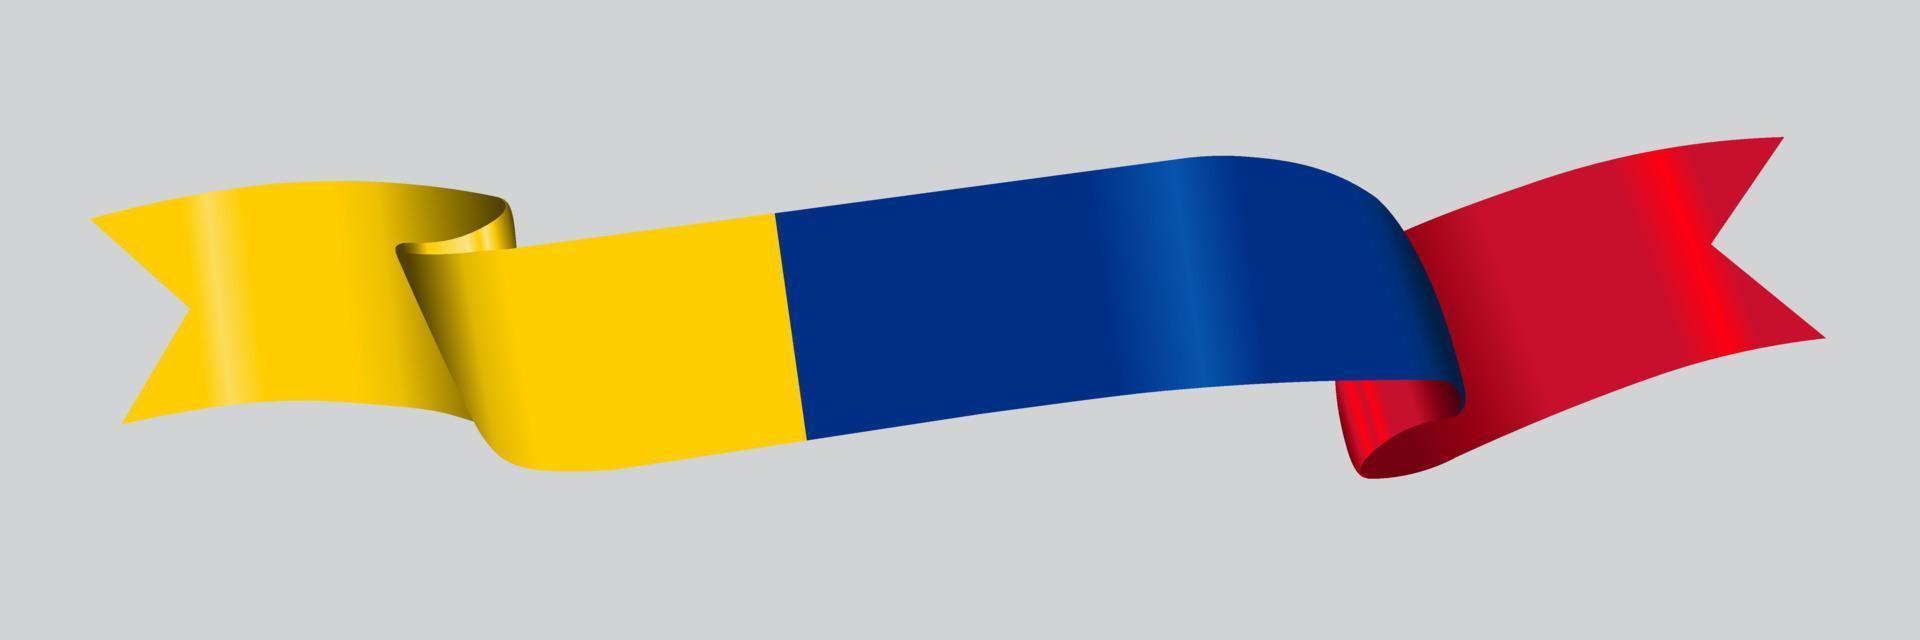 Bandeira 3D da Colômbia na faixa de opções. vetor